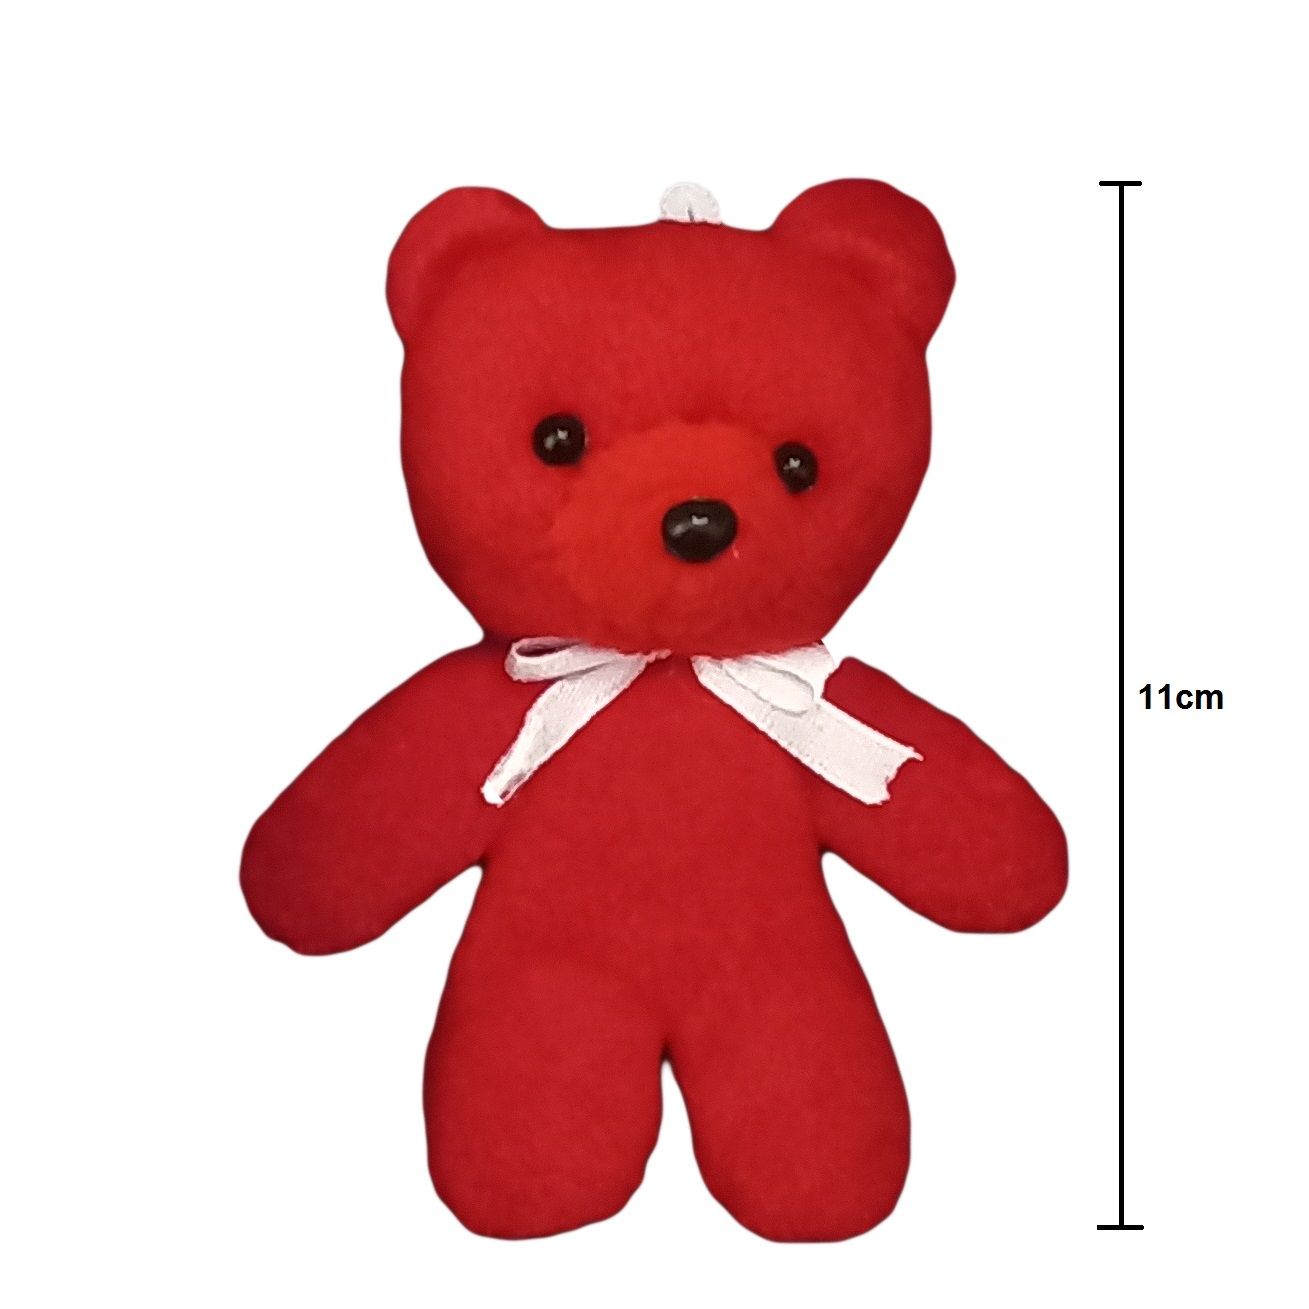 ست هدیه عروسک طرح خرس کد b12 ارتفاع 11 سانتی متر -  - 2